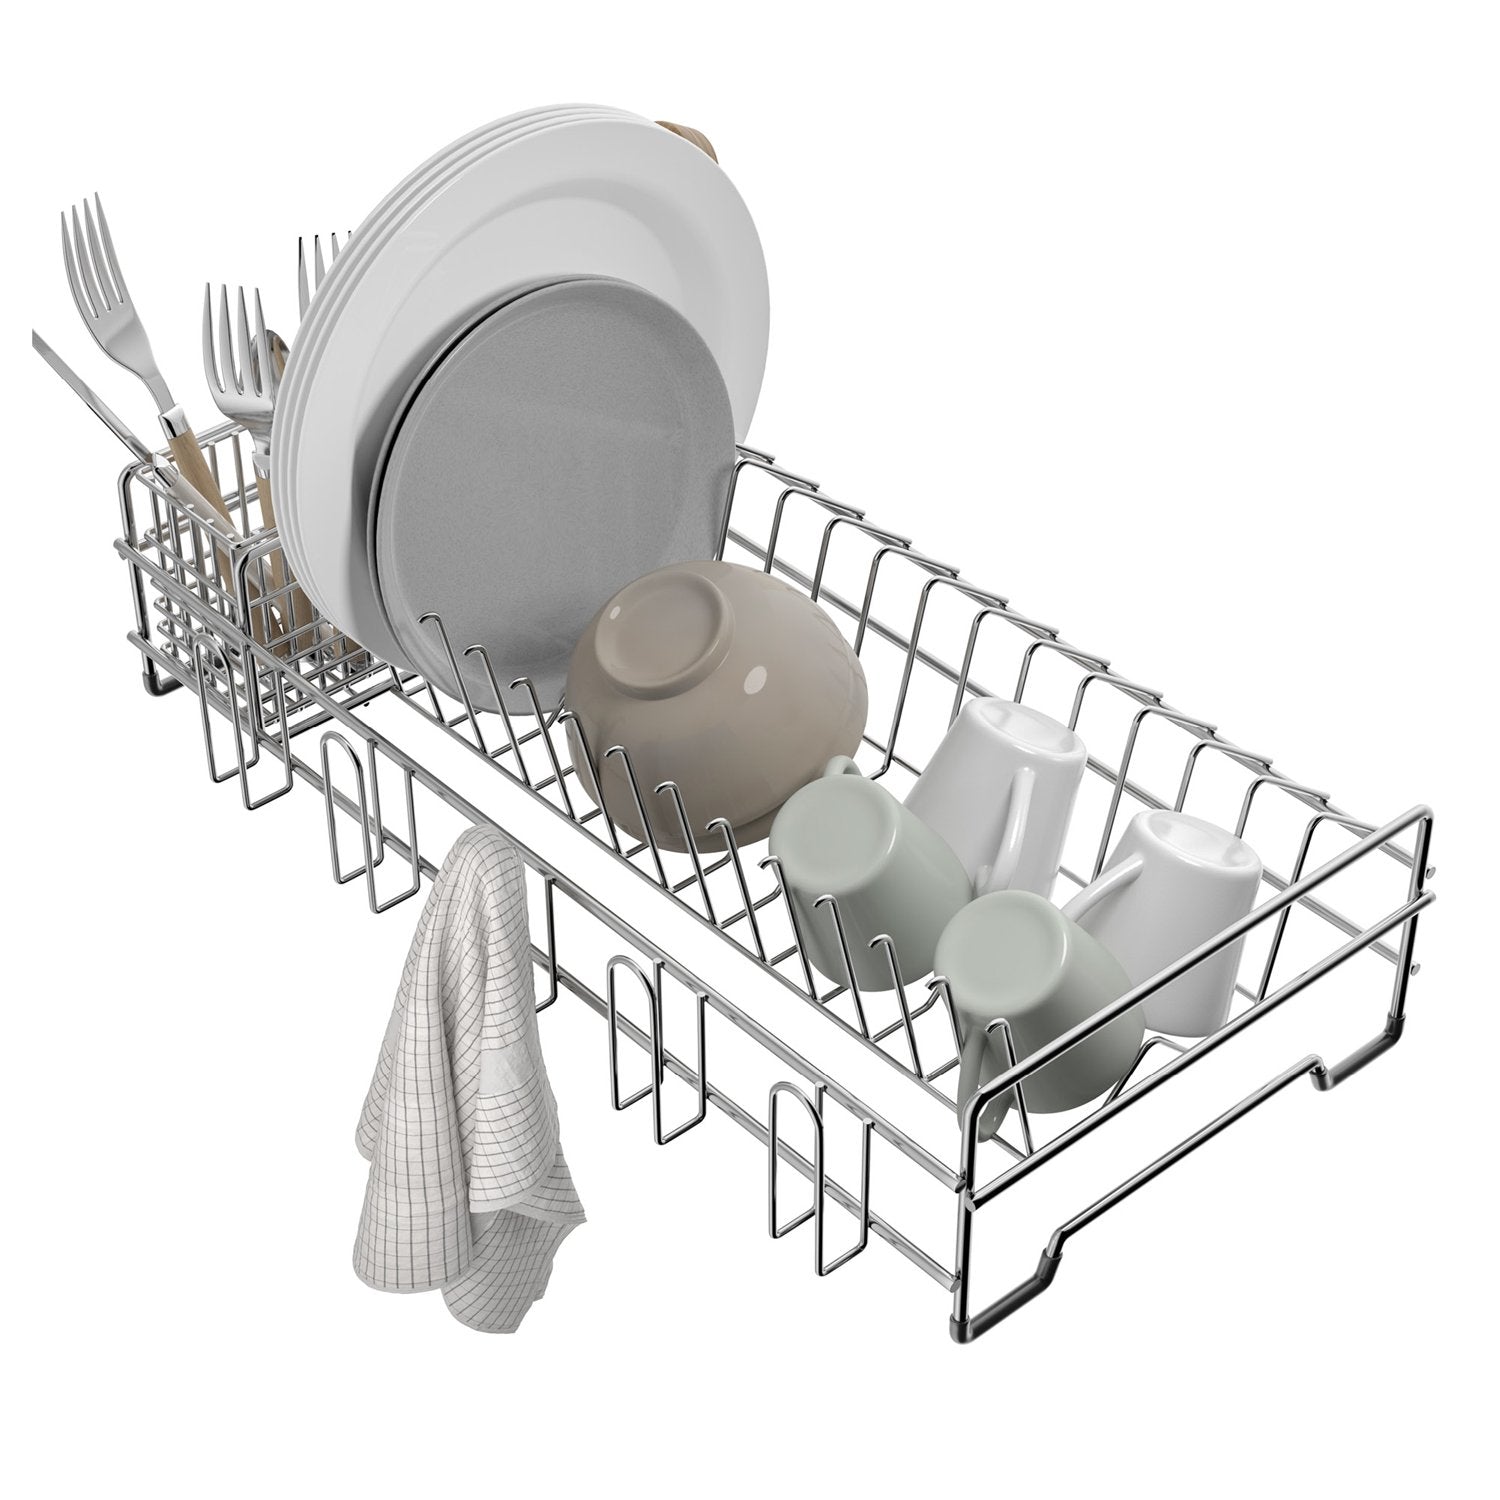 https://directsinks.com/cdn/shop/products/KRAUS-Stainless-Steel-Workstation-Sink-Dish-Utensil-Drying-Rack-3_1500x1500.jpg?v=1664279548